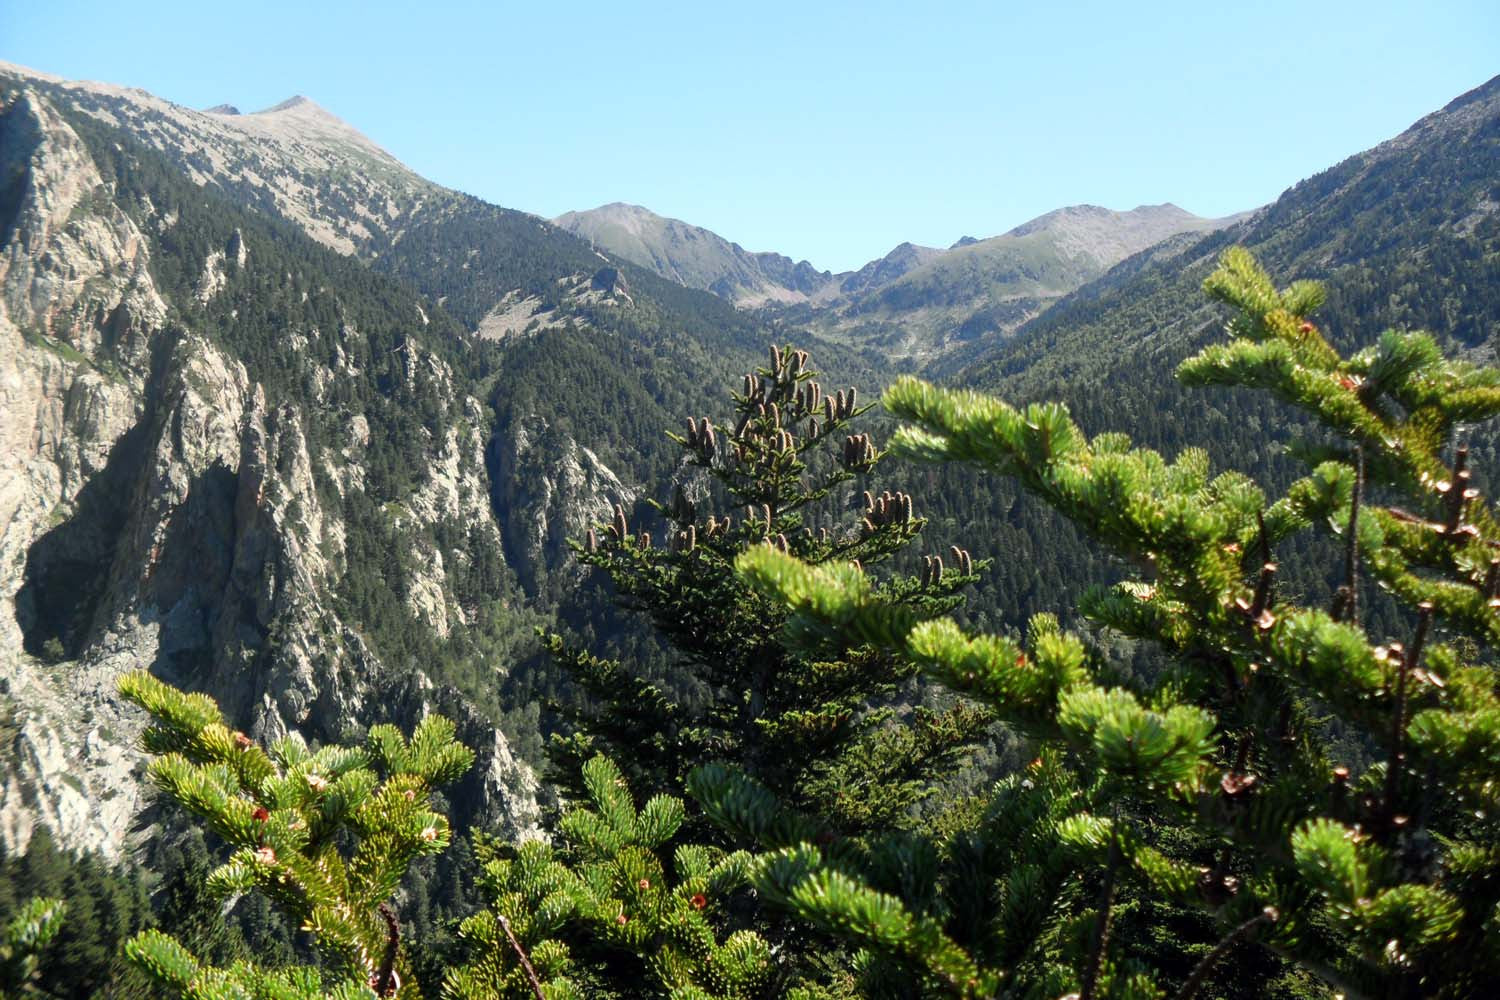 Cônes de sapin des Pyrénées (broyés) – bio et sauvages